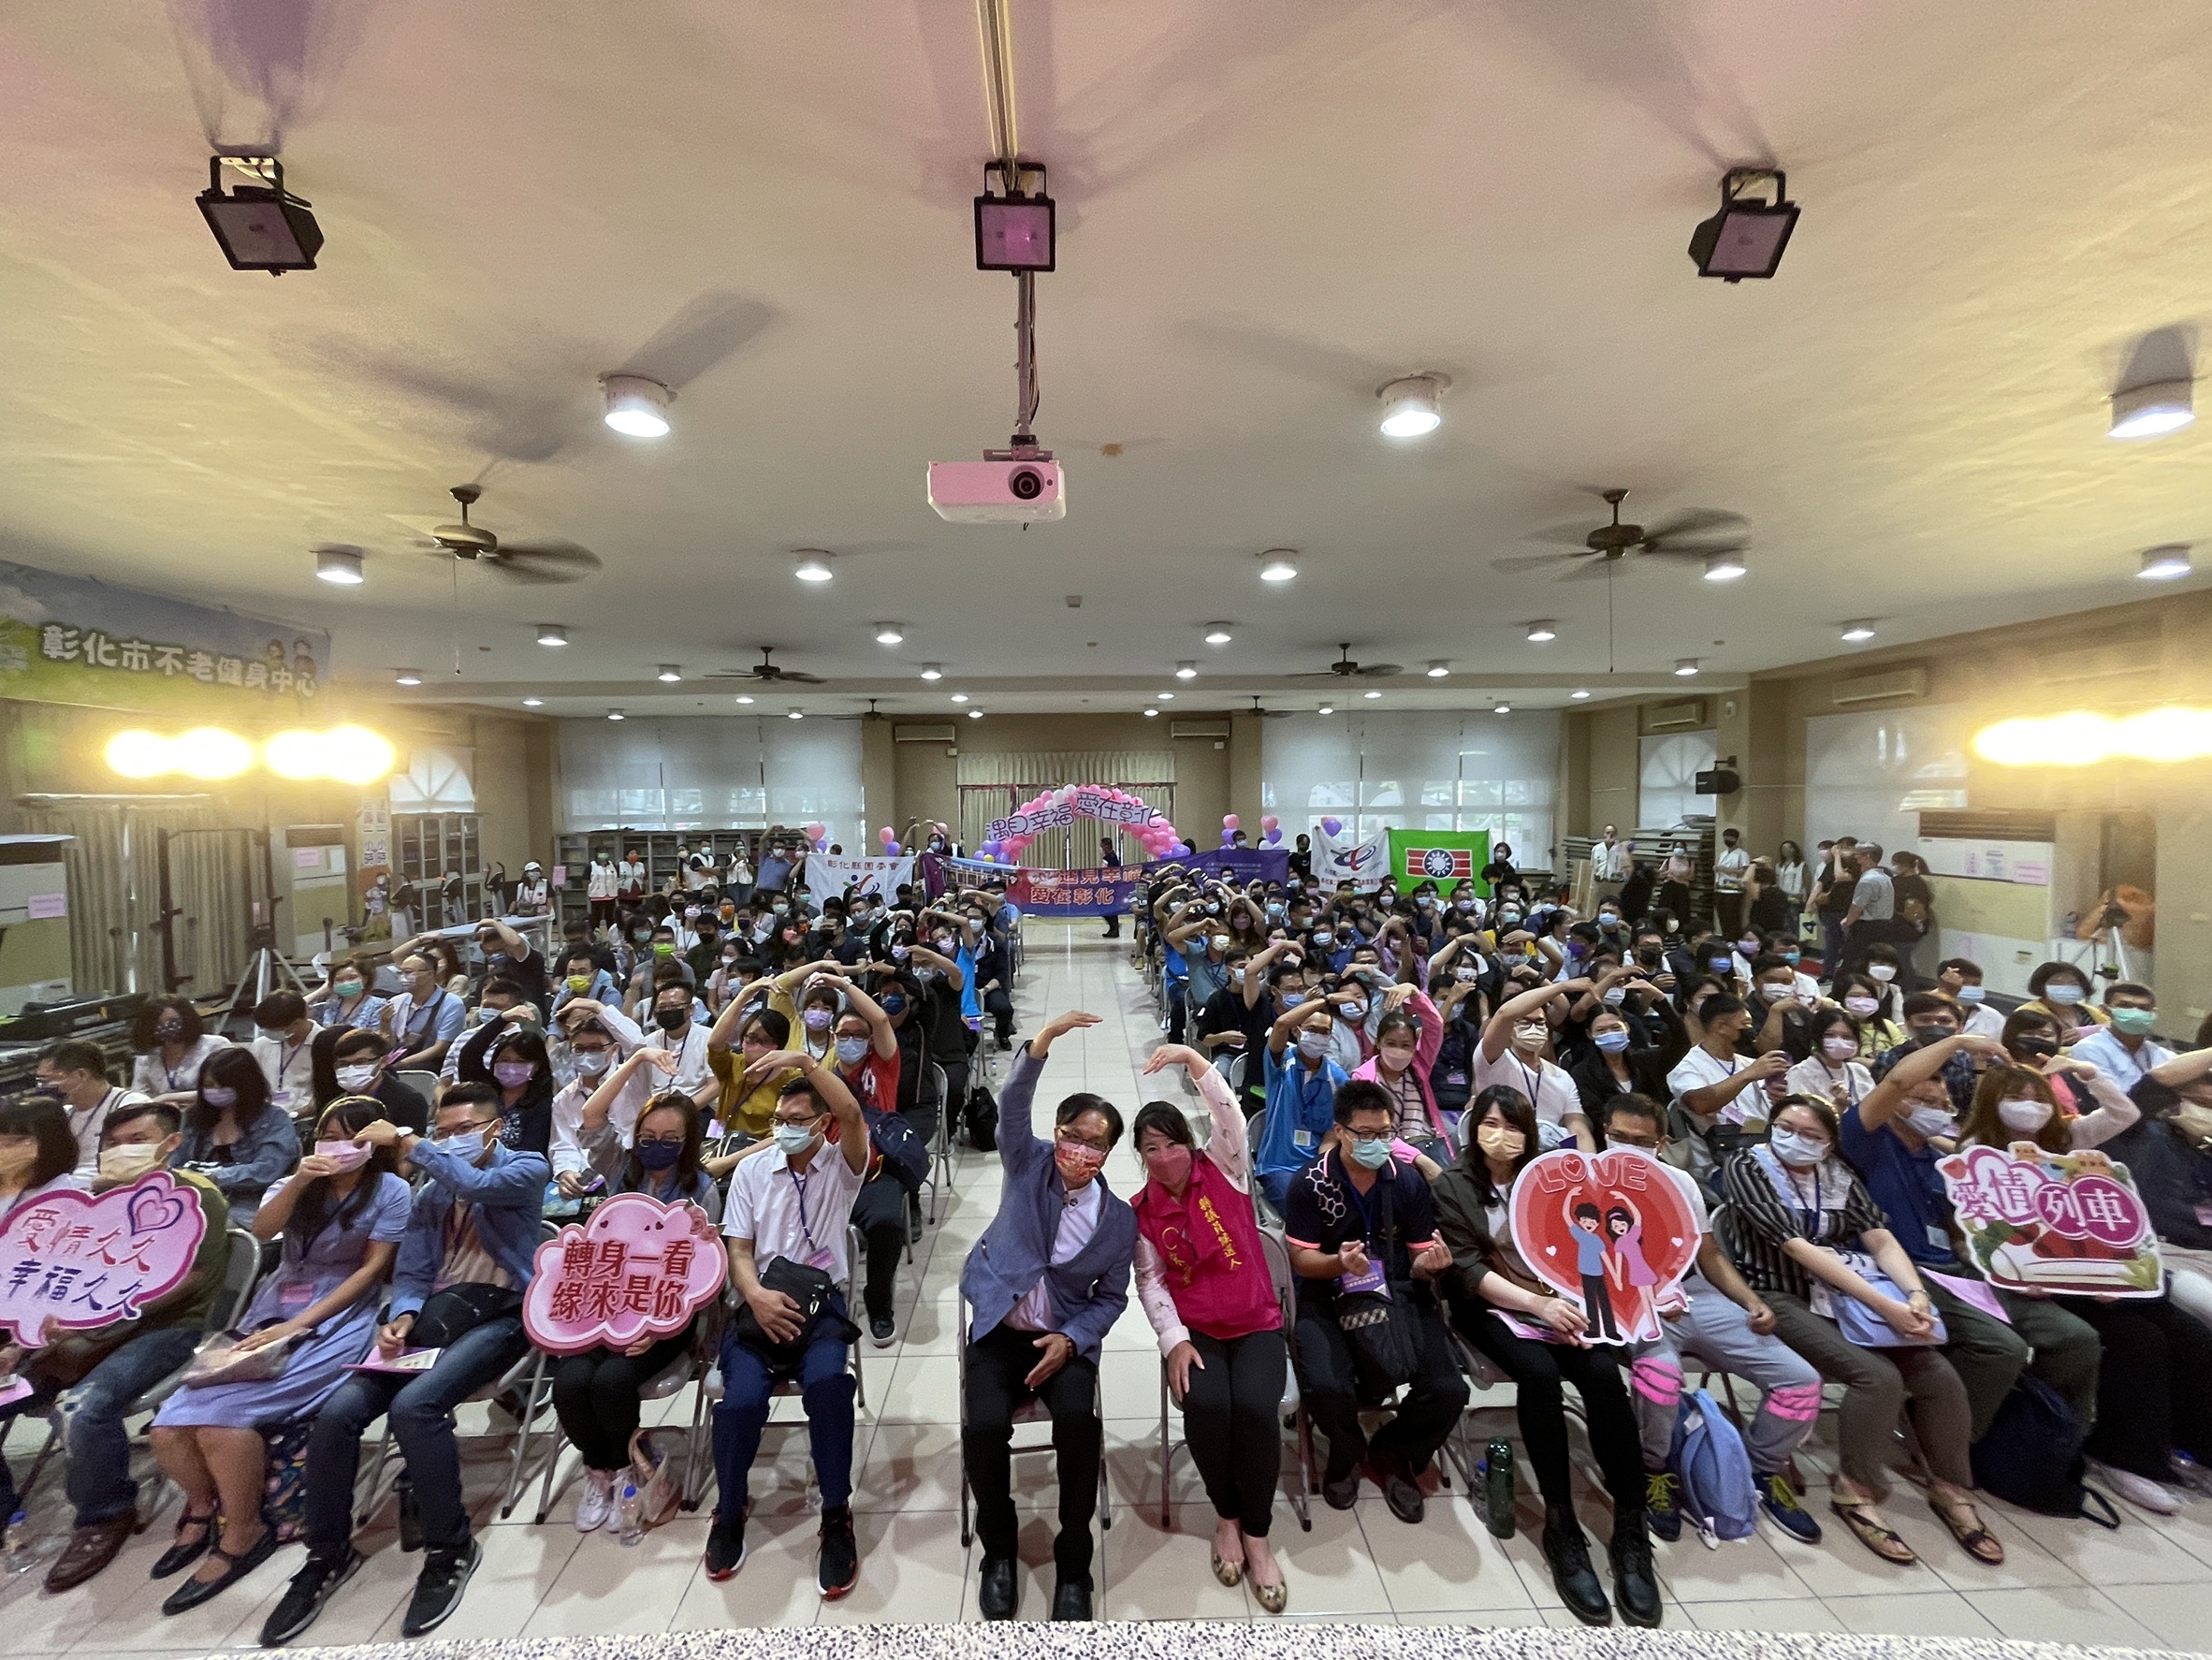 雖然颱風外圍環流干擾未婚聯誼活動仍順利舉行林世賢市長和青年朋友們相見歡